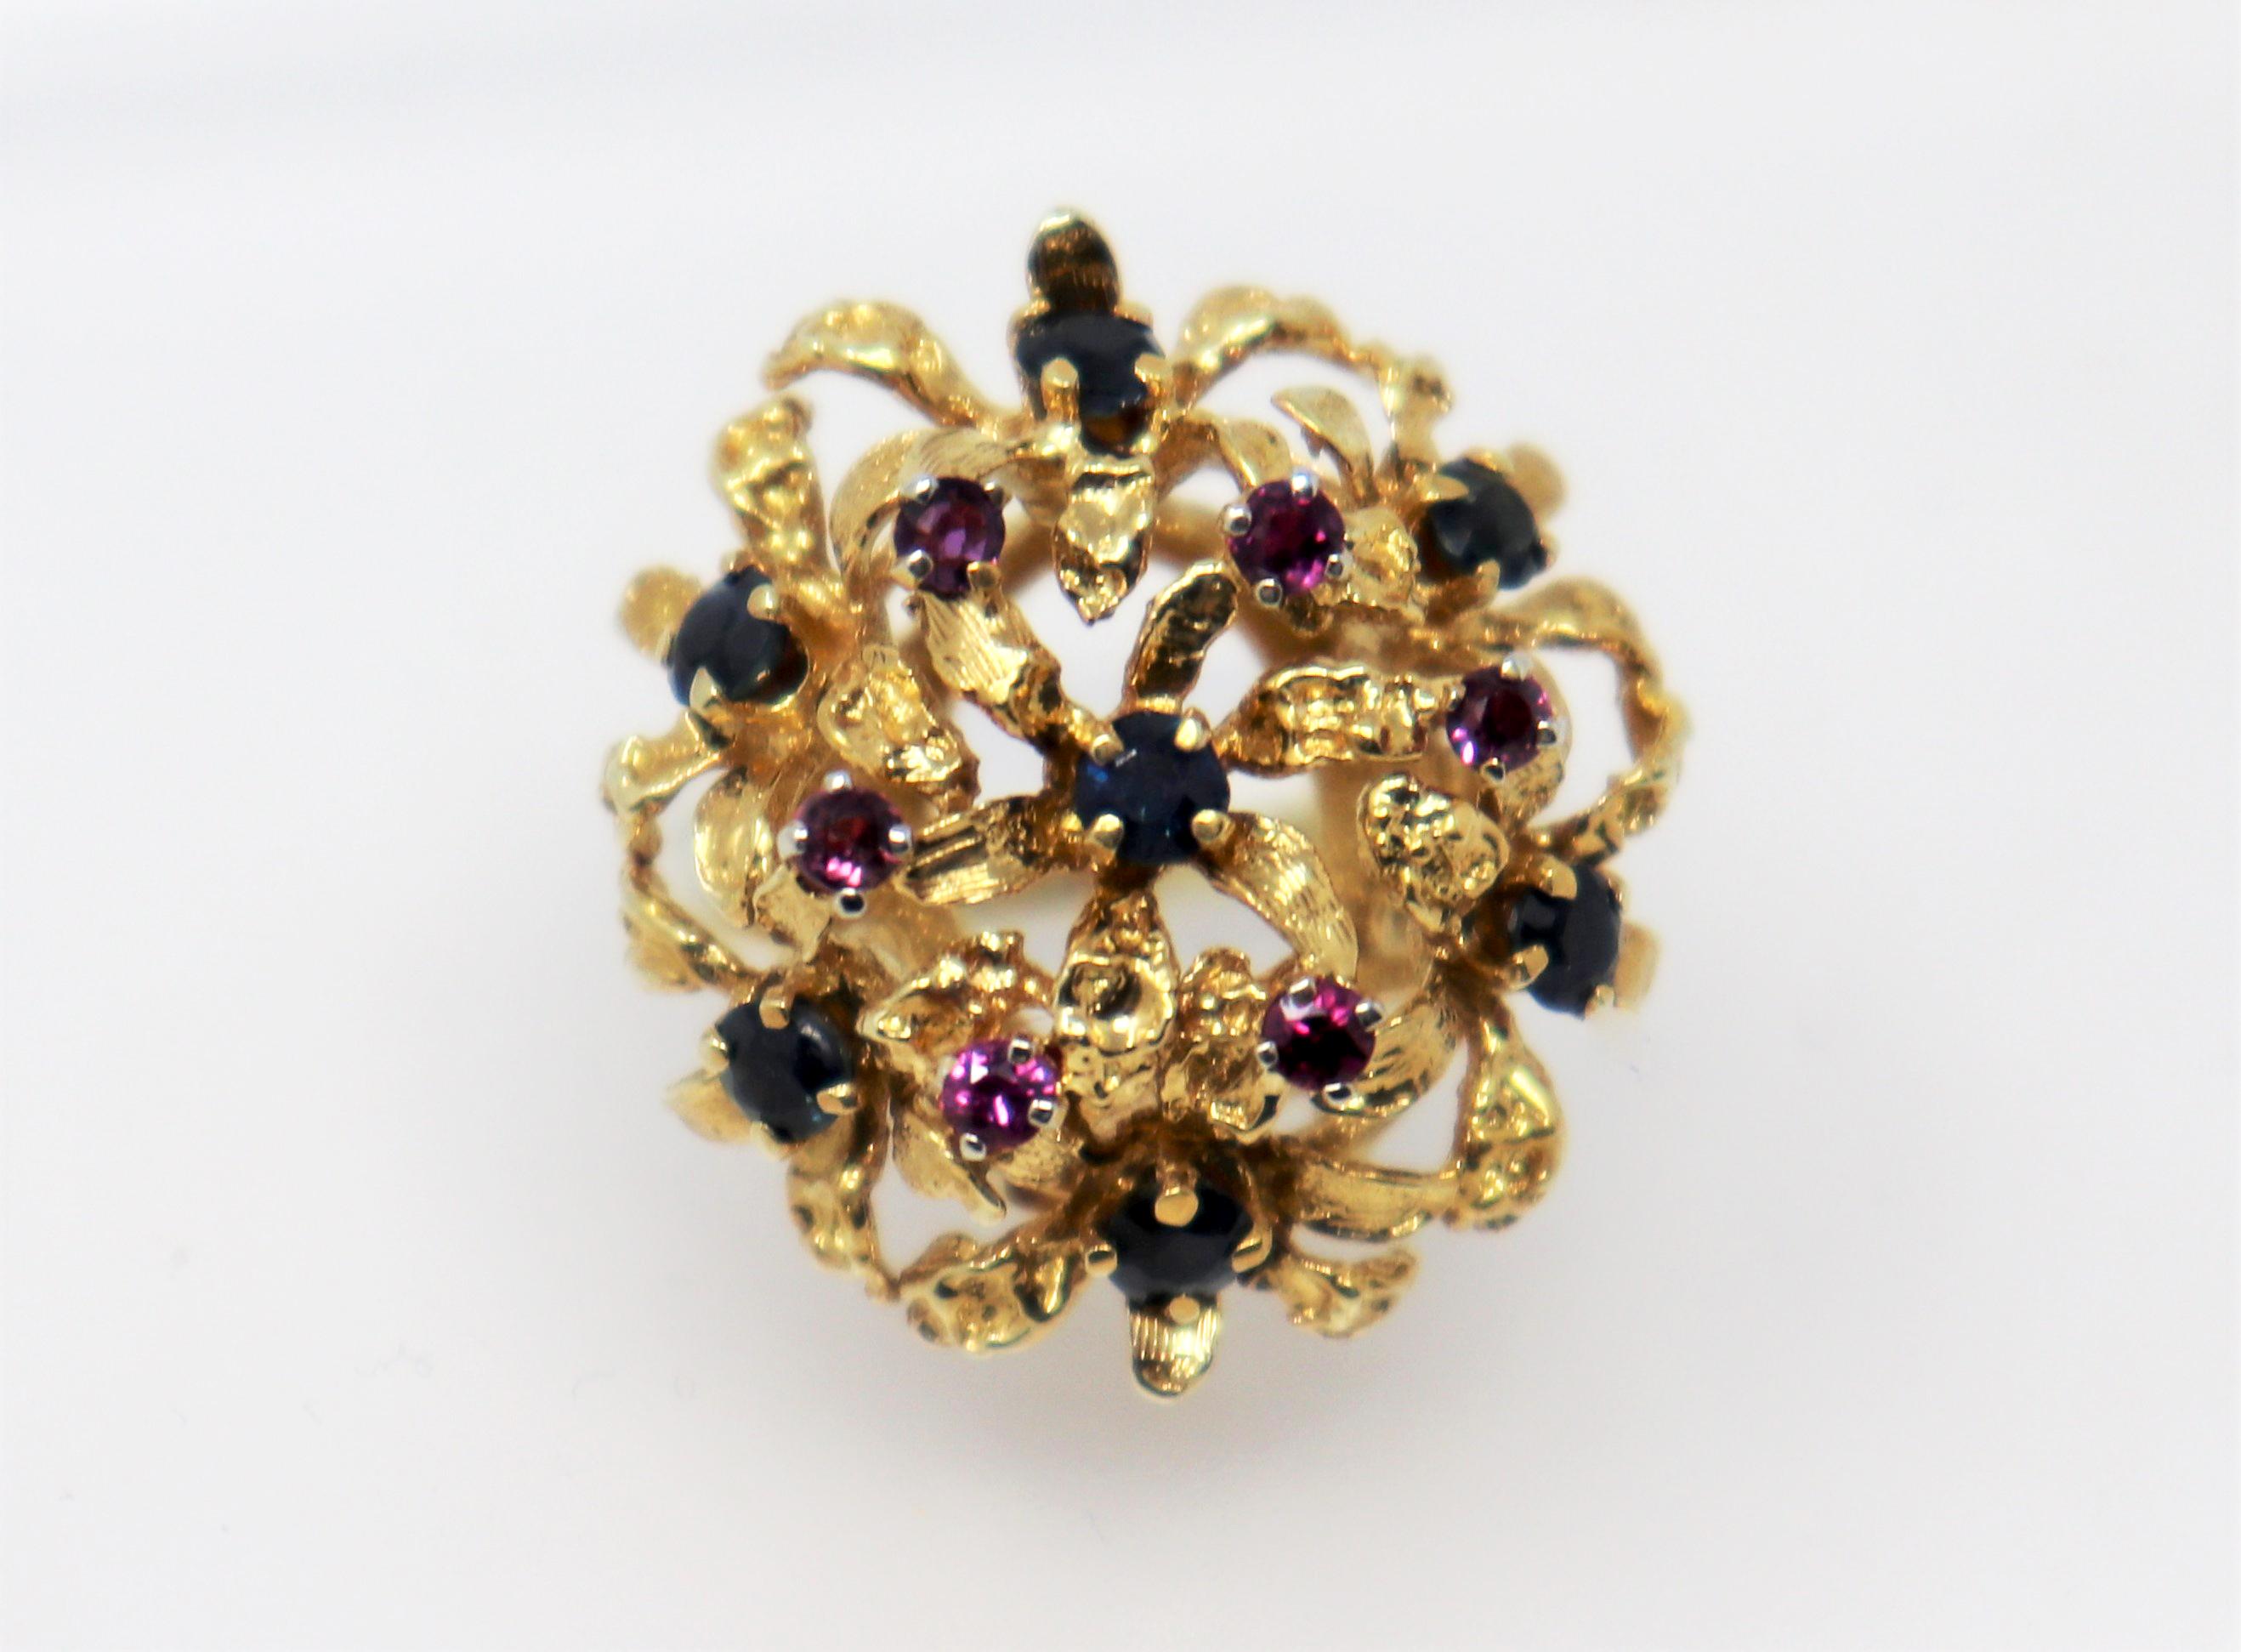 Ringgröße: 6.75

Hübscher Vintage-Cocktailring in leuchtenden Farben. Dieses schöne Stück hat eine romantische, feminine Kuppelfassung, die von blauen und violetten Saphiren akzentuiert wird. Der farbenfrohe runde Cluster mit seinem verschlungenen